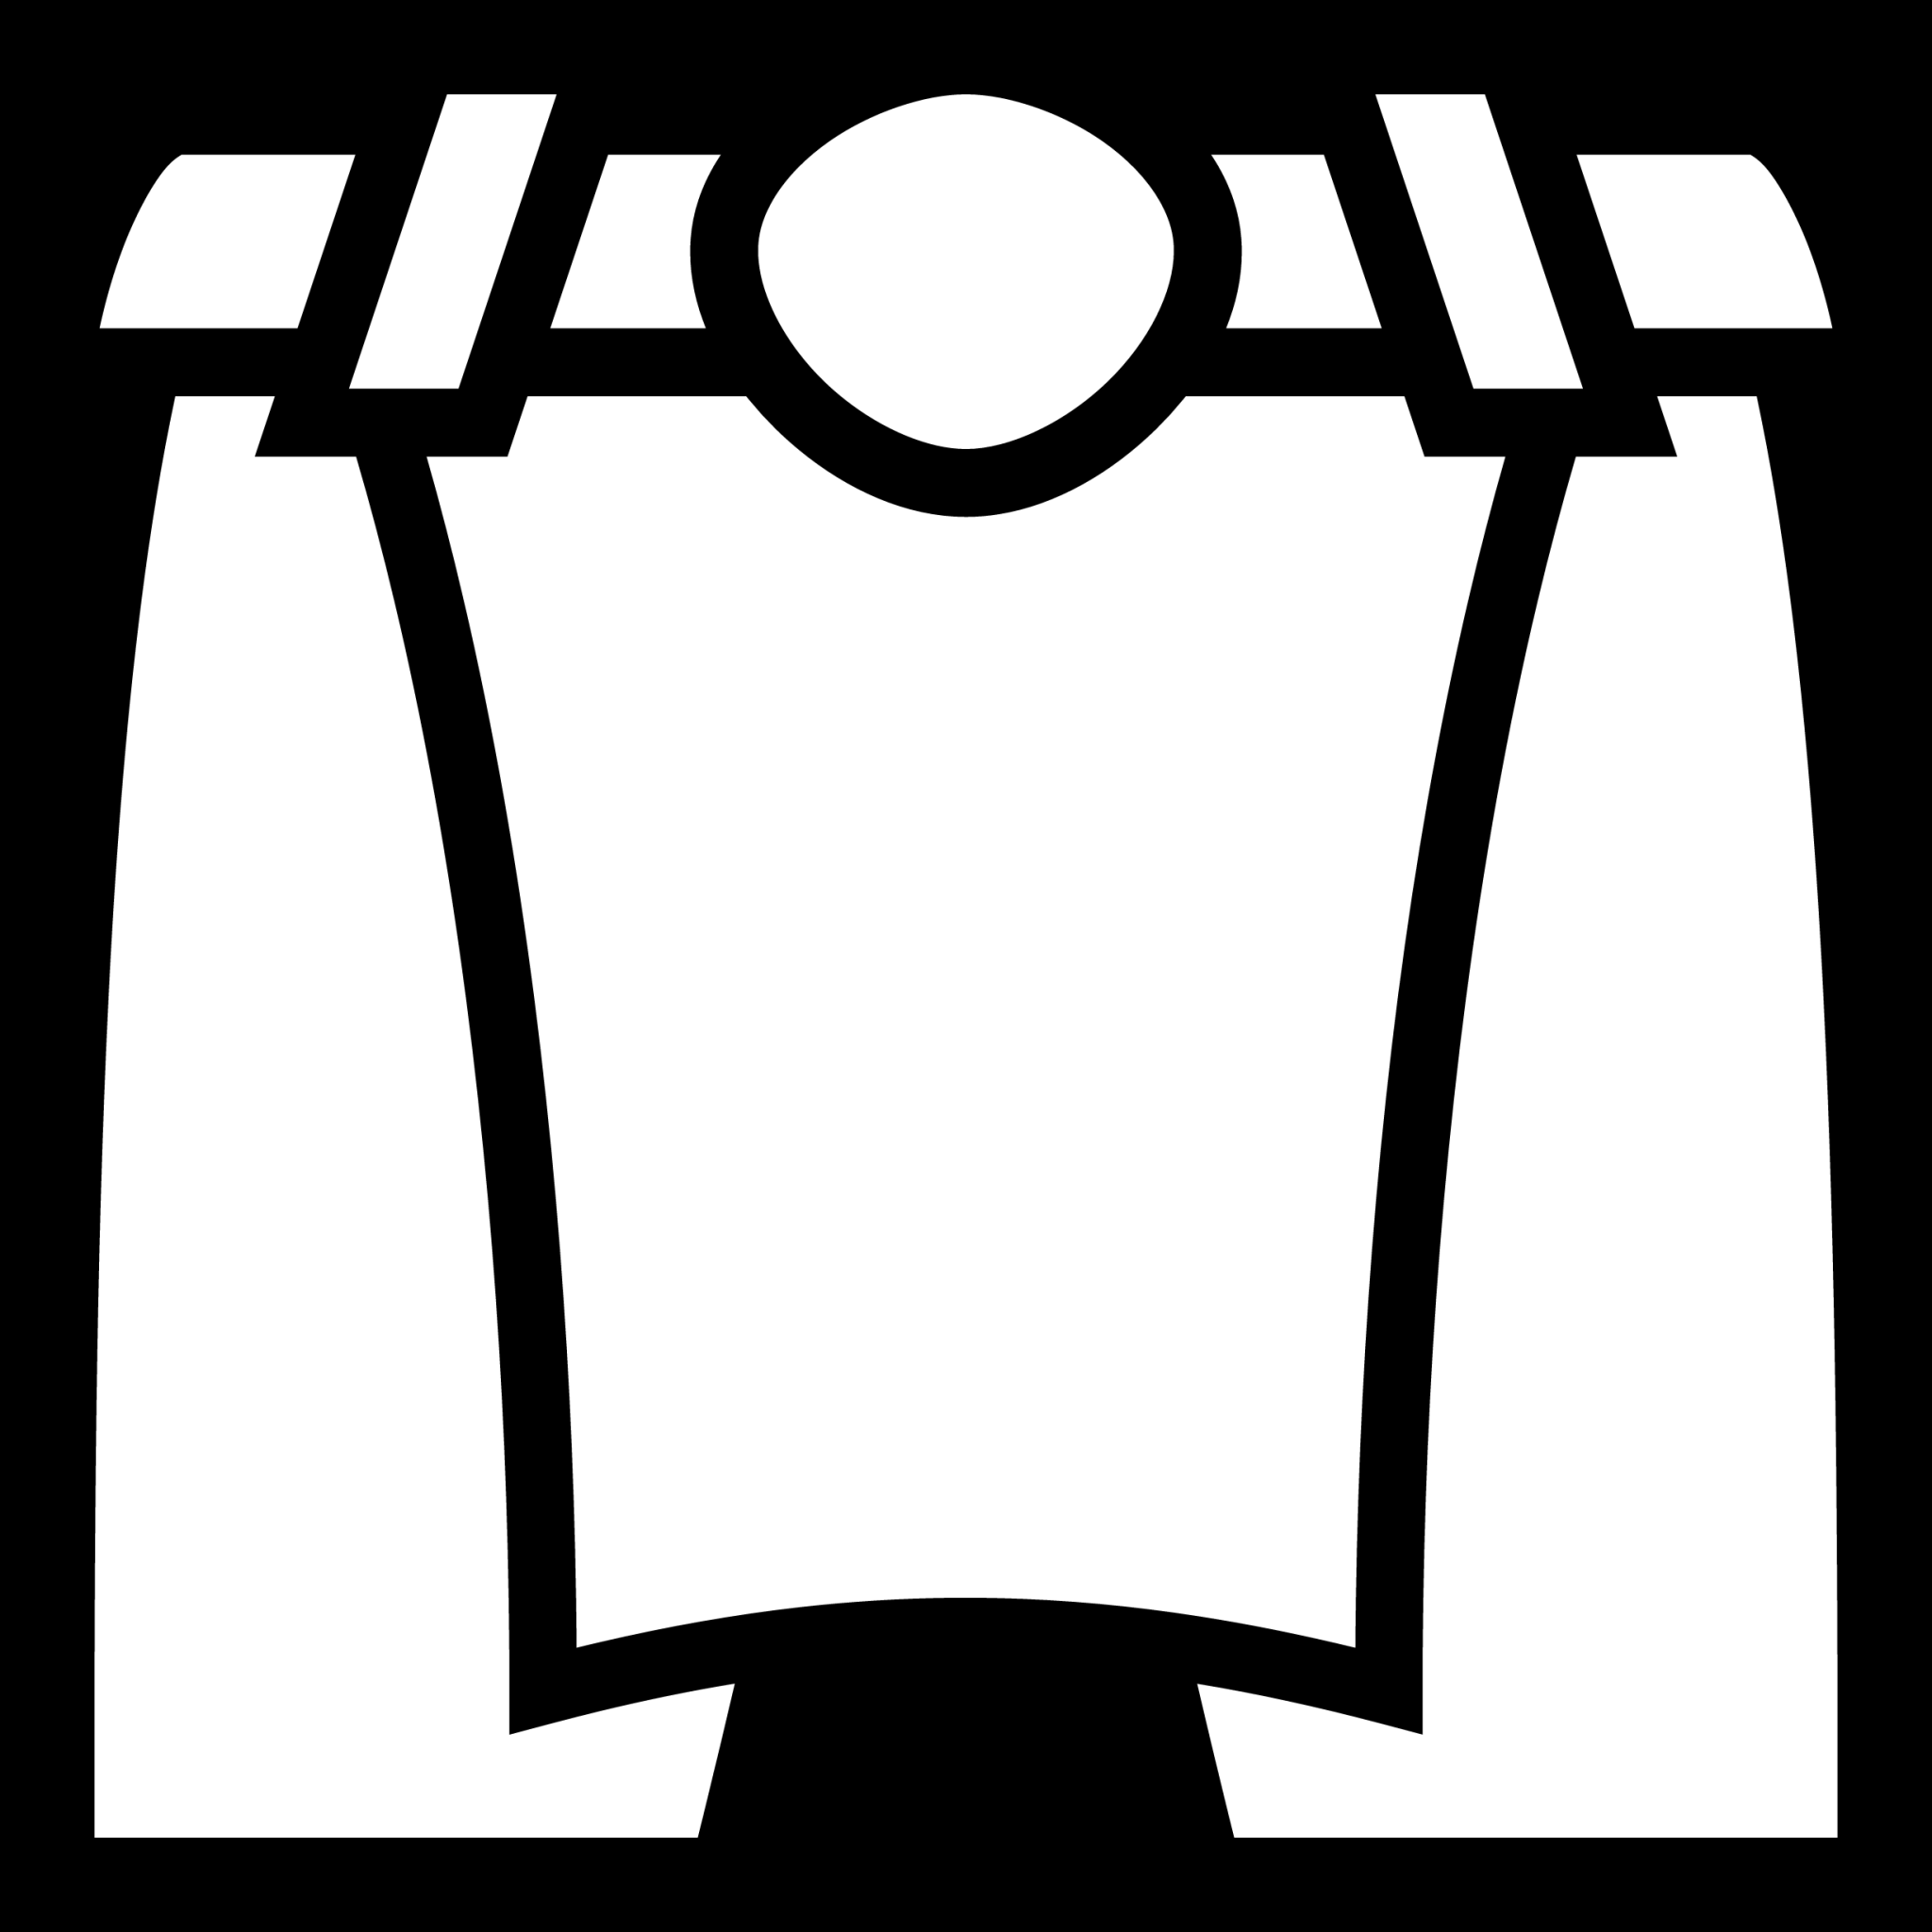 loincloth icon